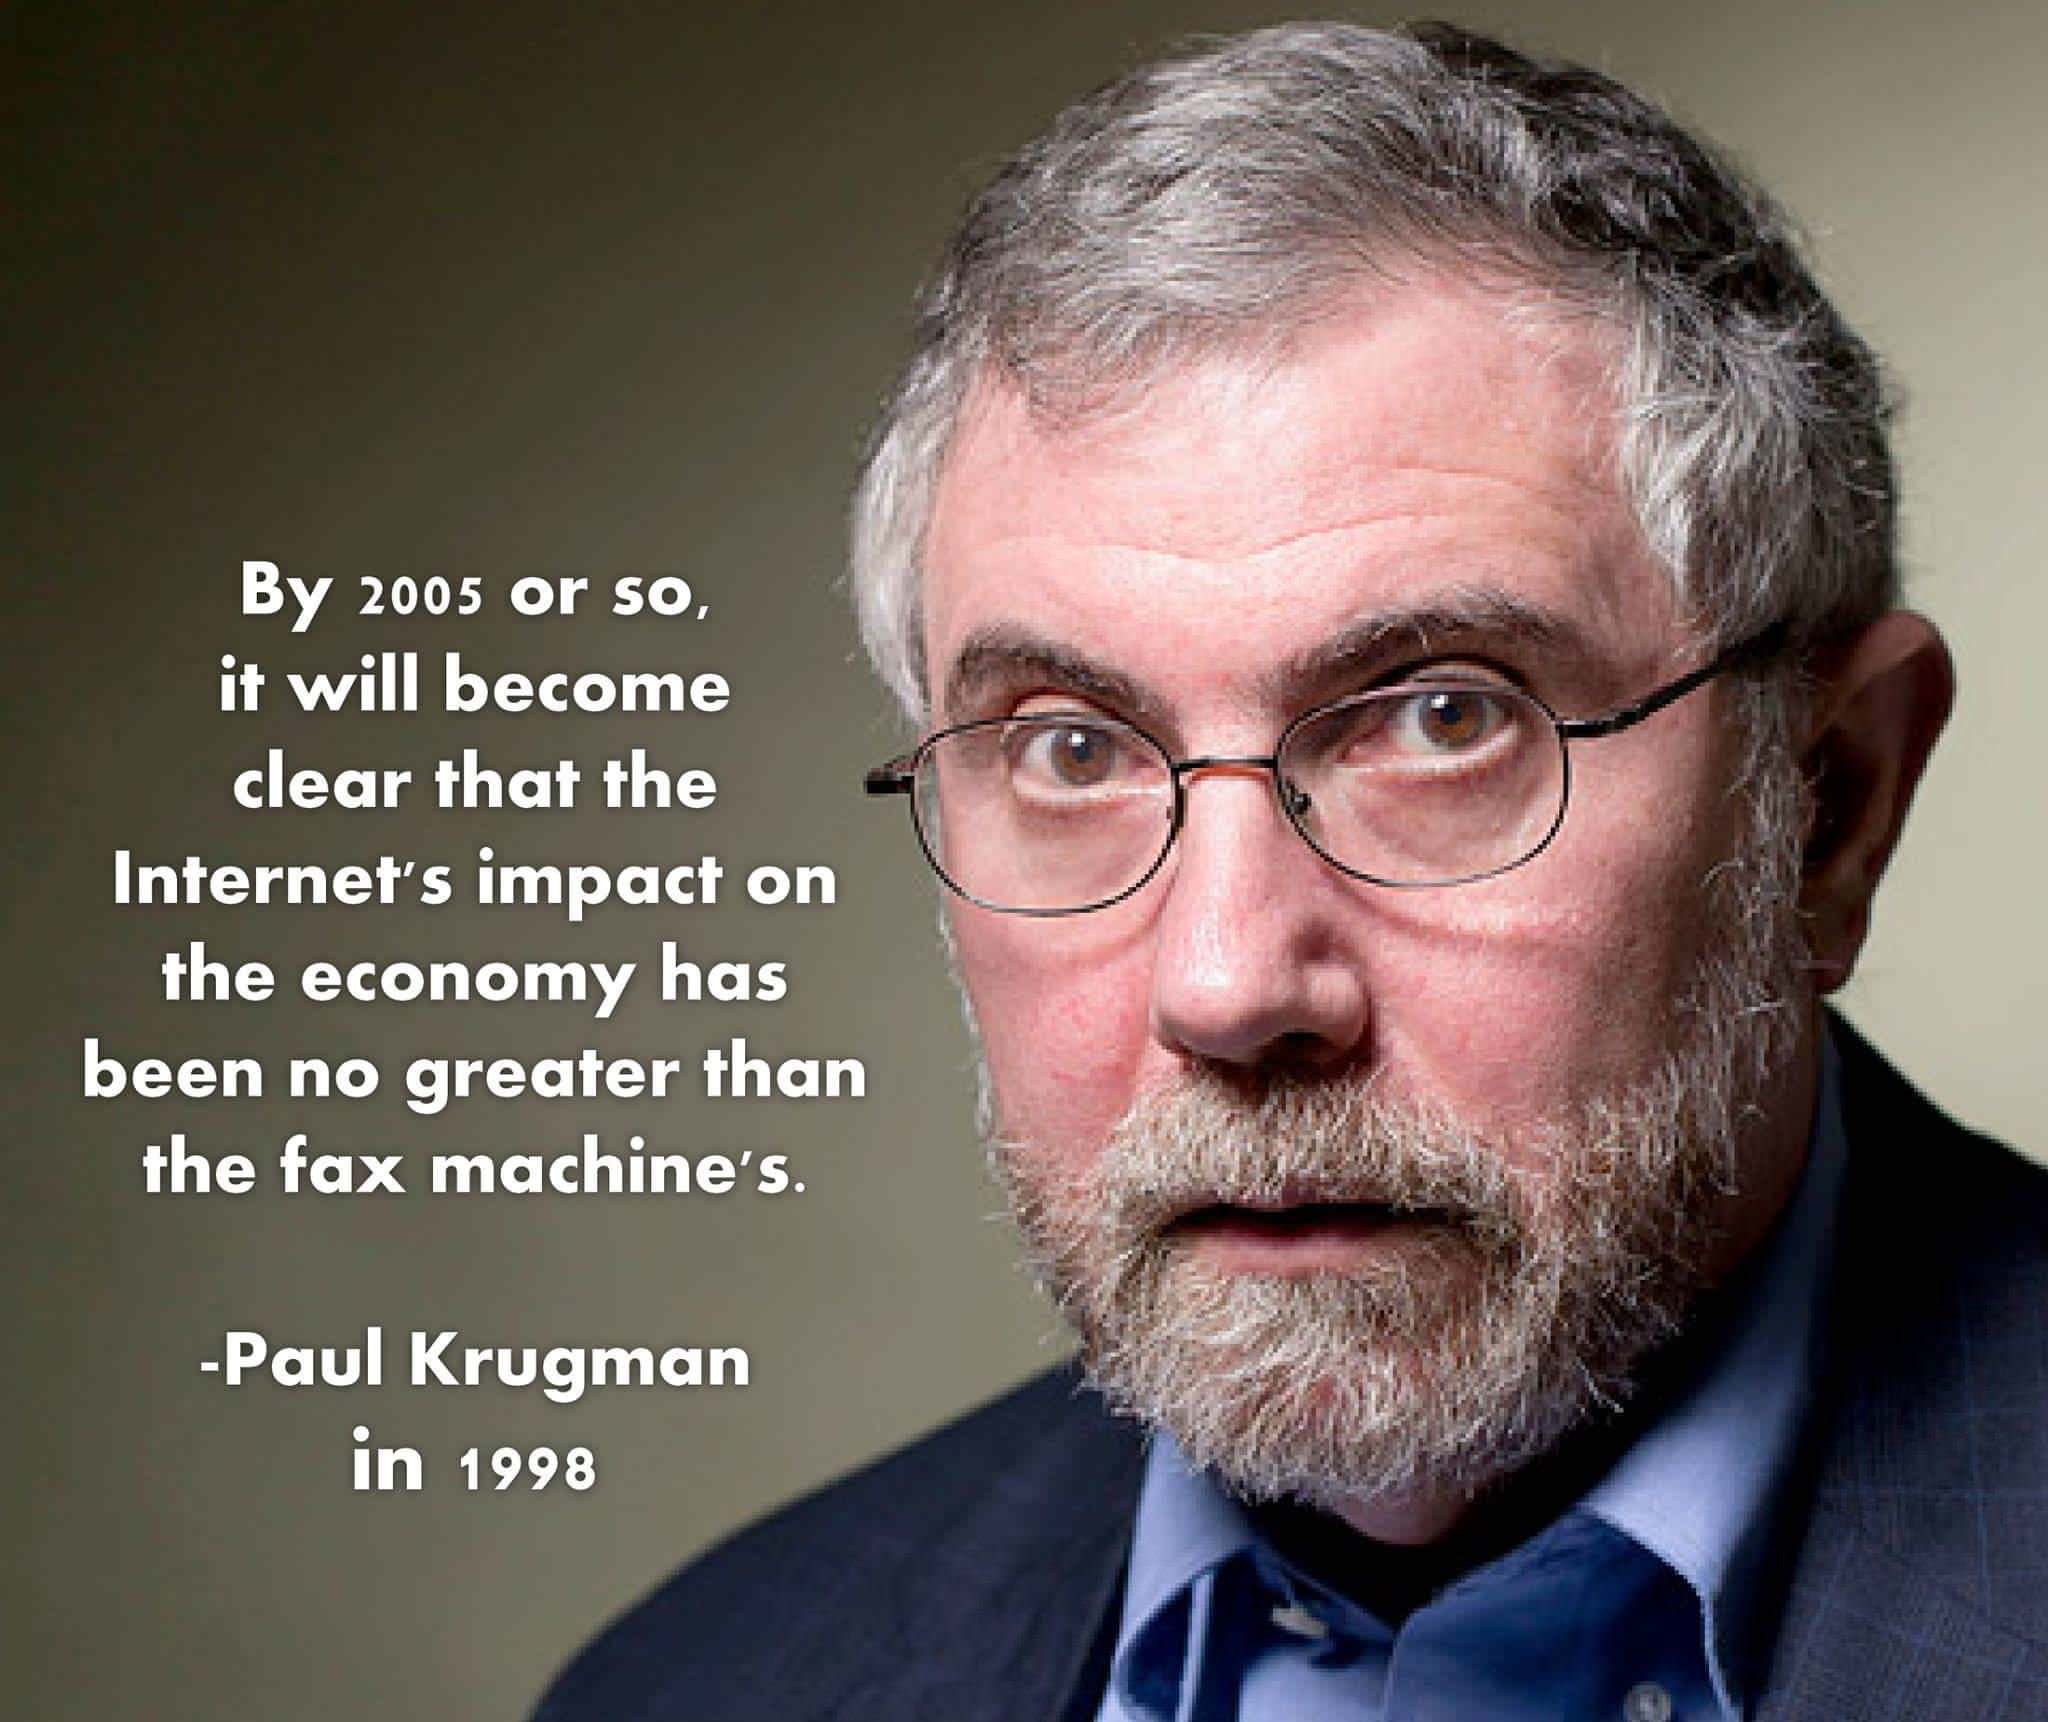 Сколько будет существовать Биткоин? Знаменитая цитата Пола Кругмана из 1998 года: «До 2005 года станет ясно, что влияние Интернета на экономику было не большим, чем влияние факс-машин». Фото.